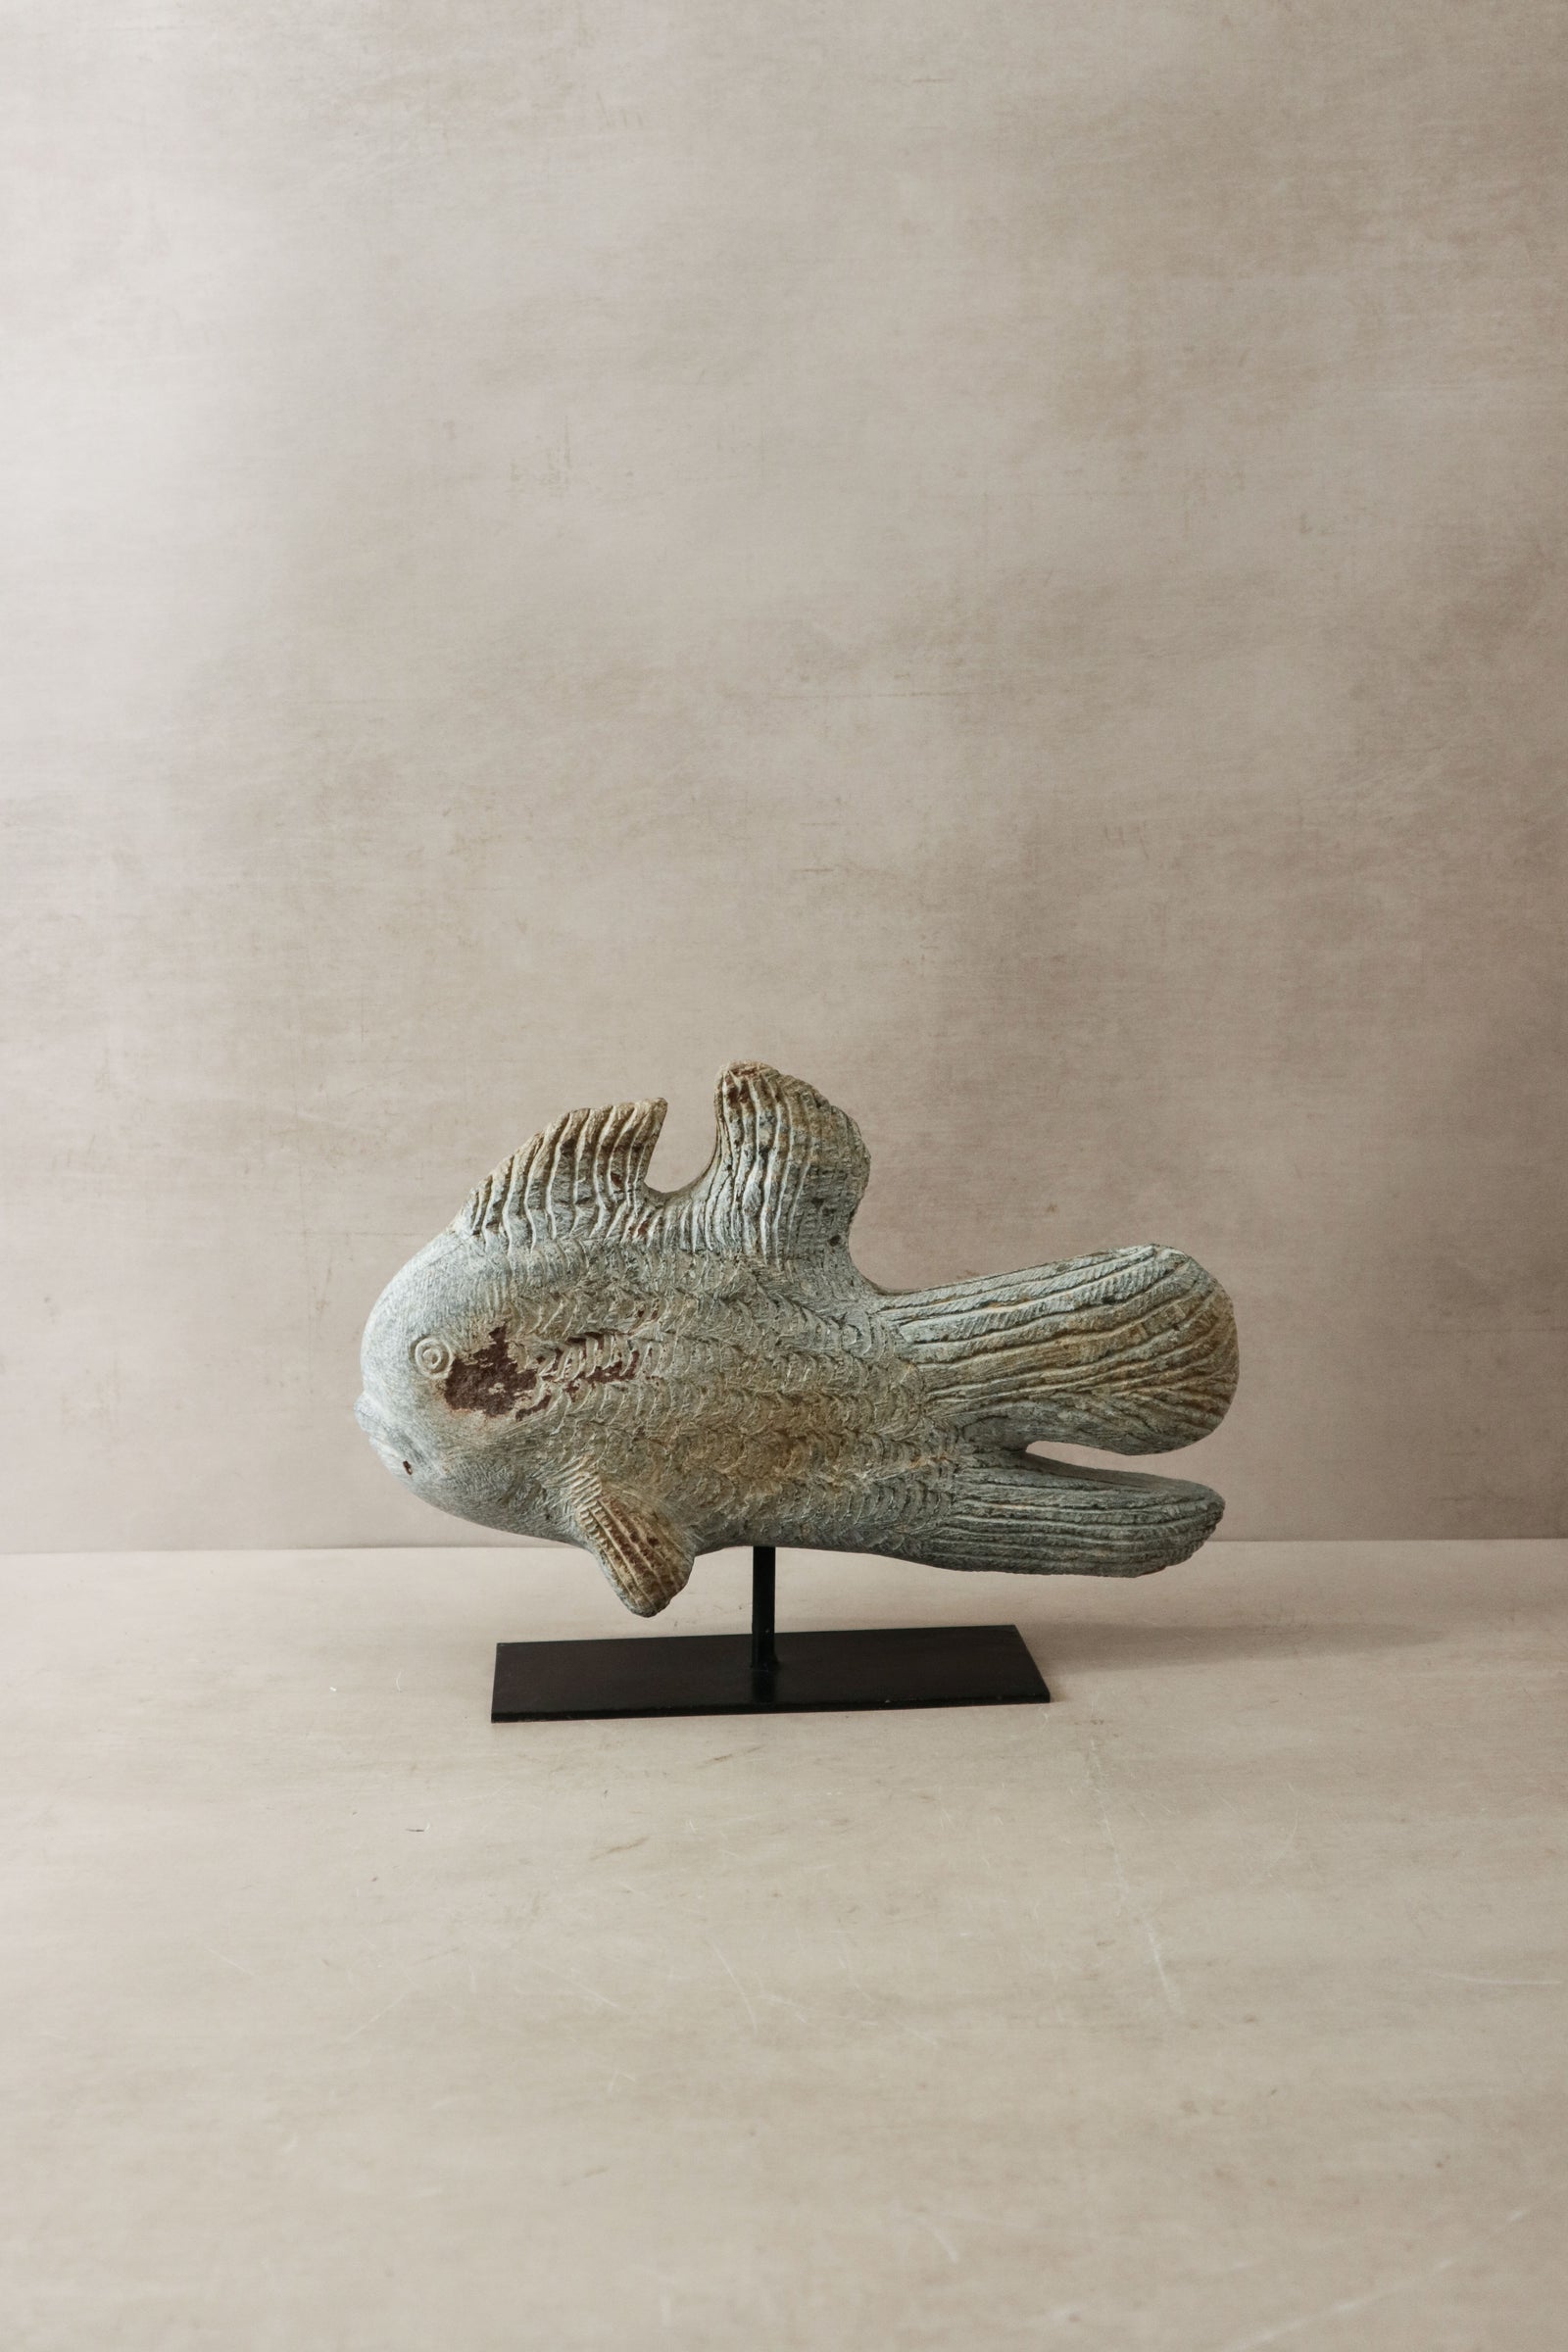 Stone Fish Sculpture - Zimbabwe - 38.1